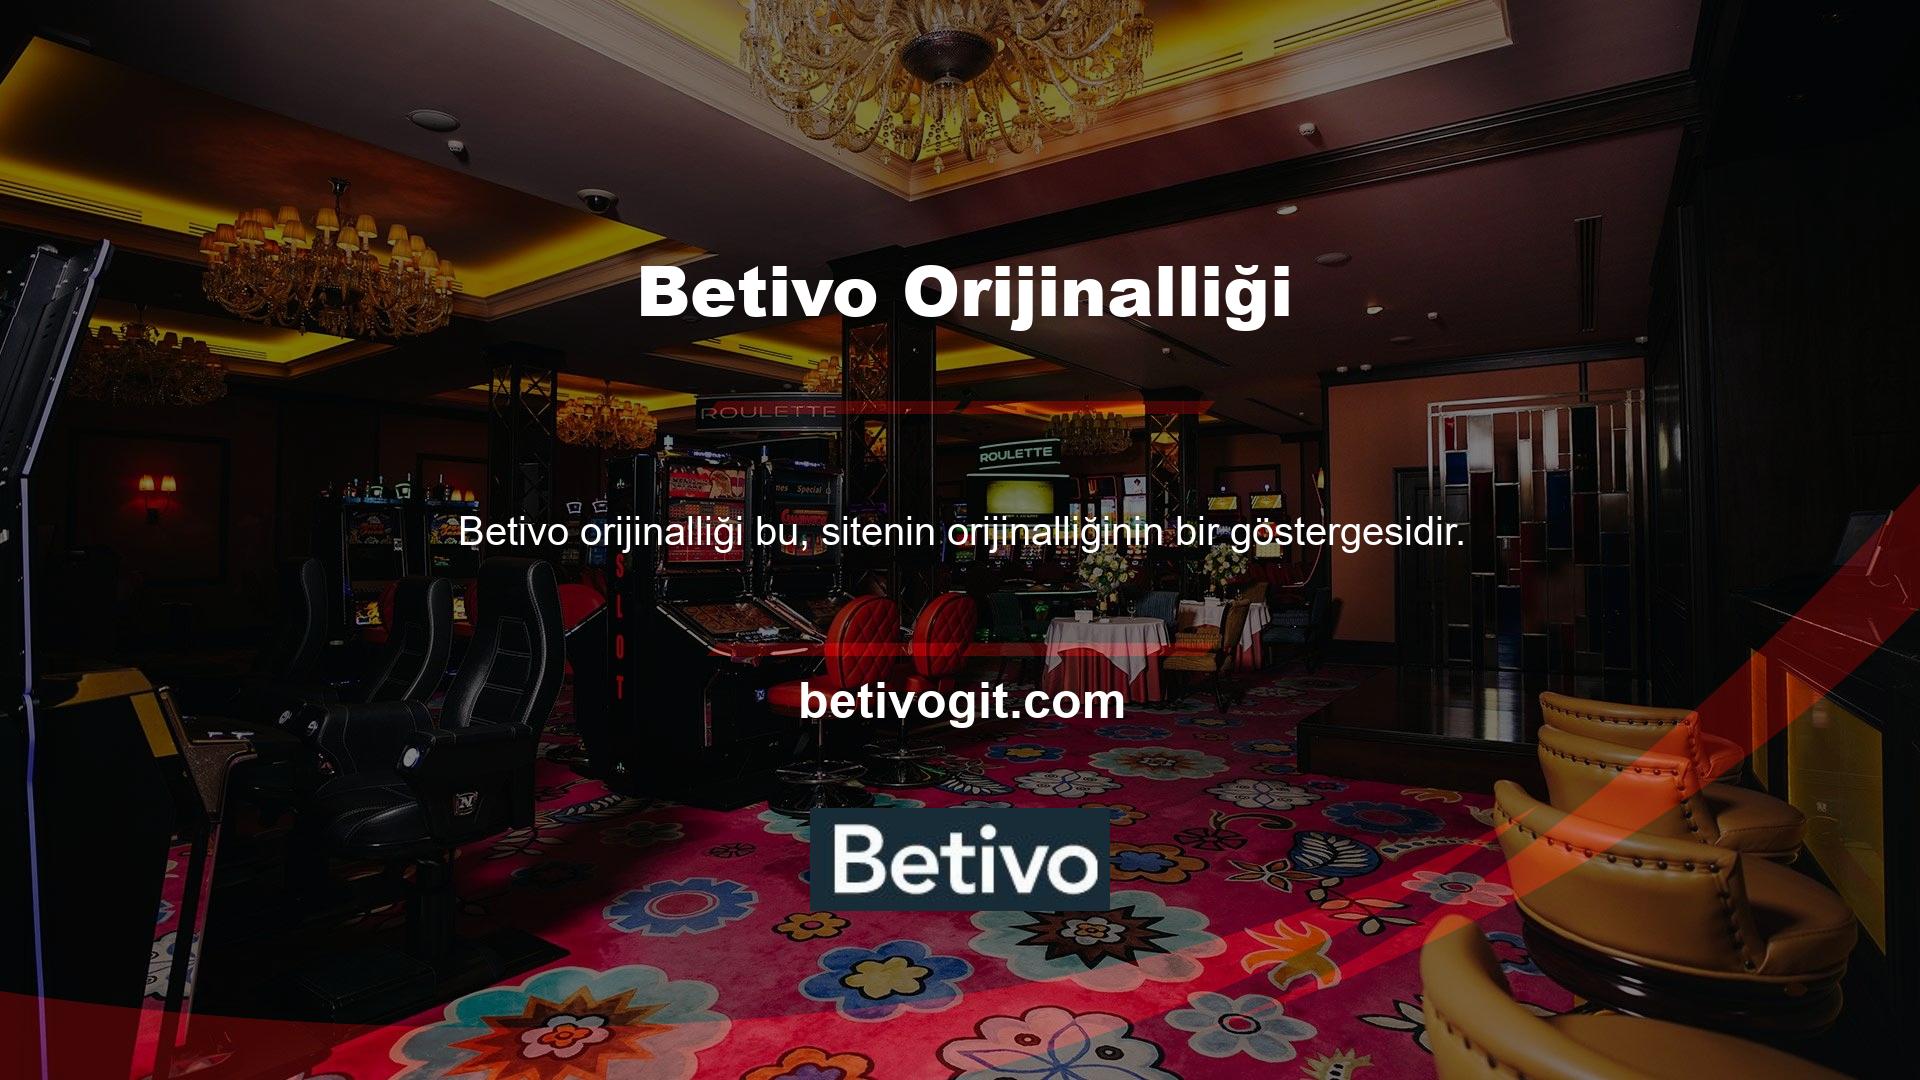 Her ne kadar yaygın olarak tanınmasa da Betivo bahis sitesi kullanıcılar tarafından güvenilirliği açısından test edilmiştir